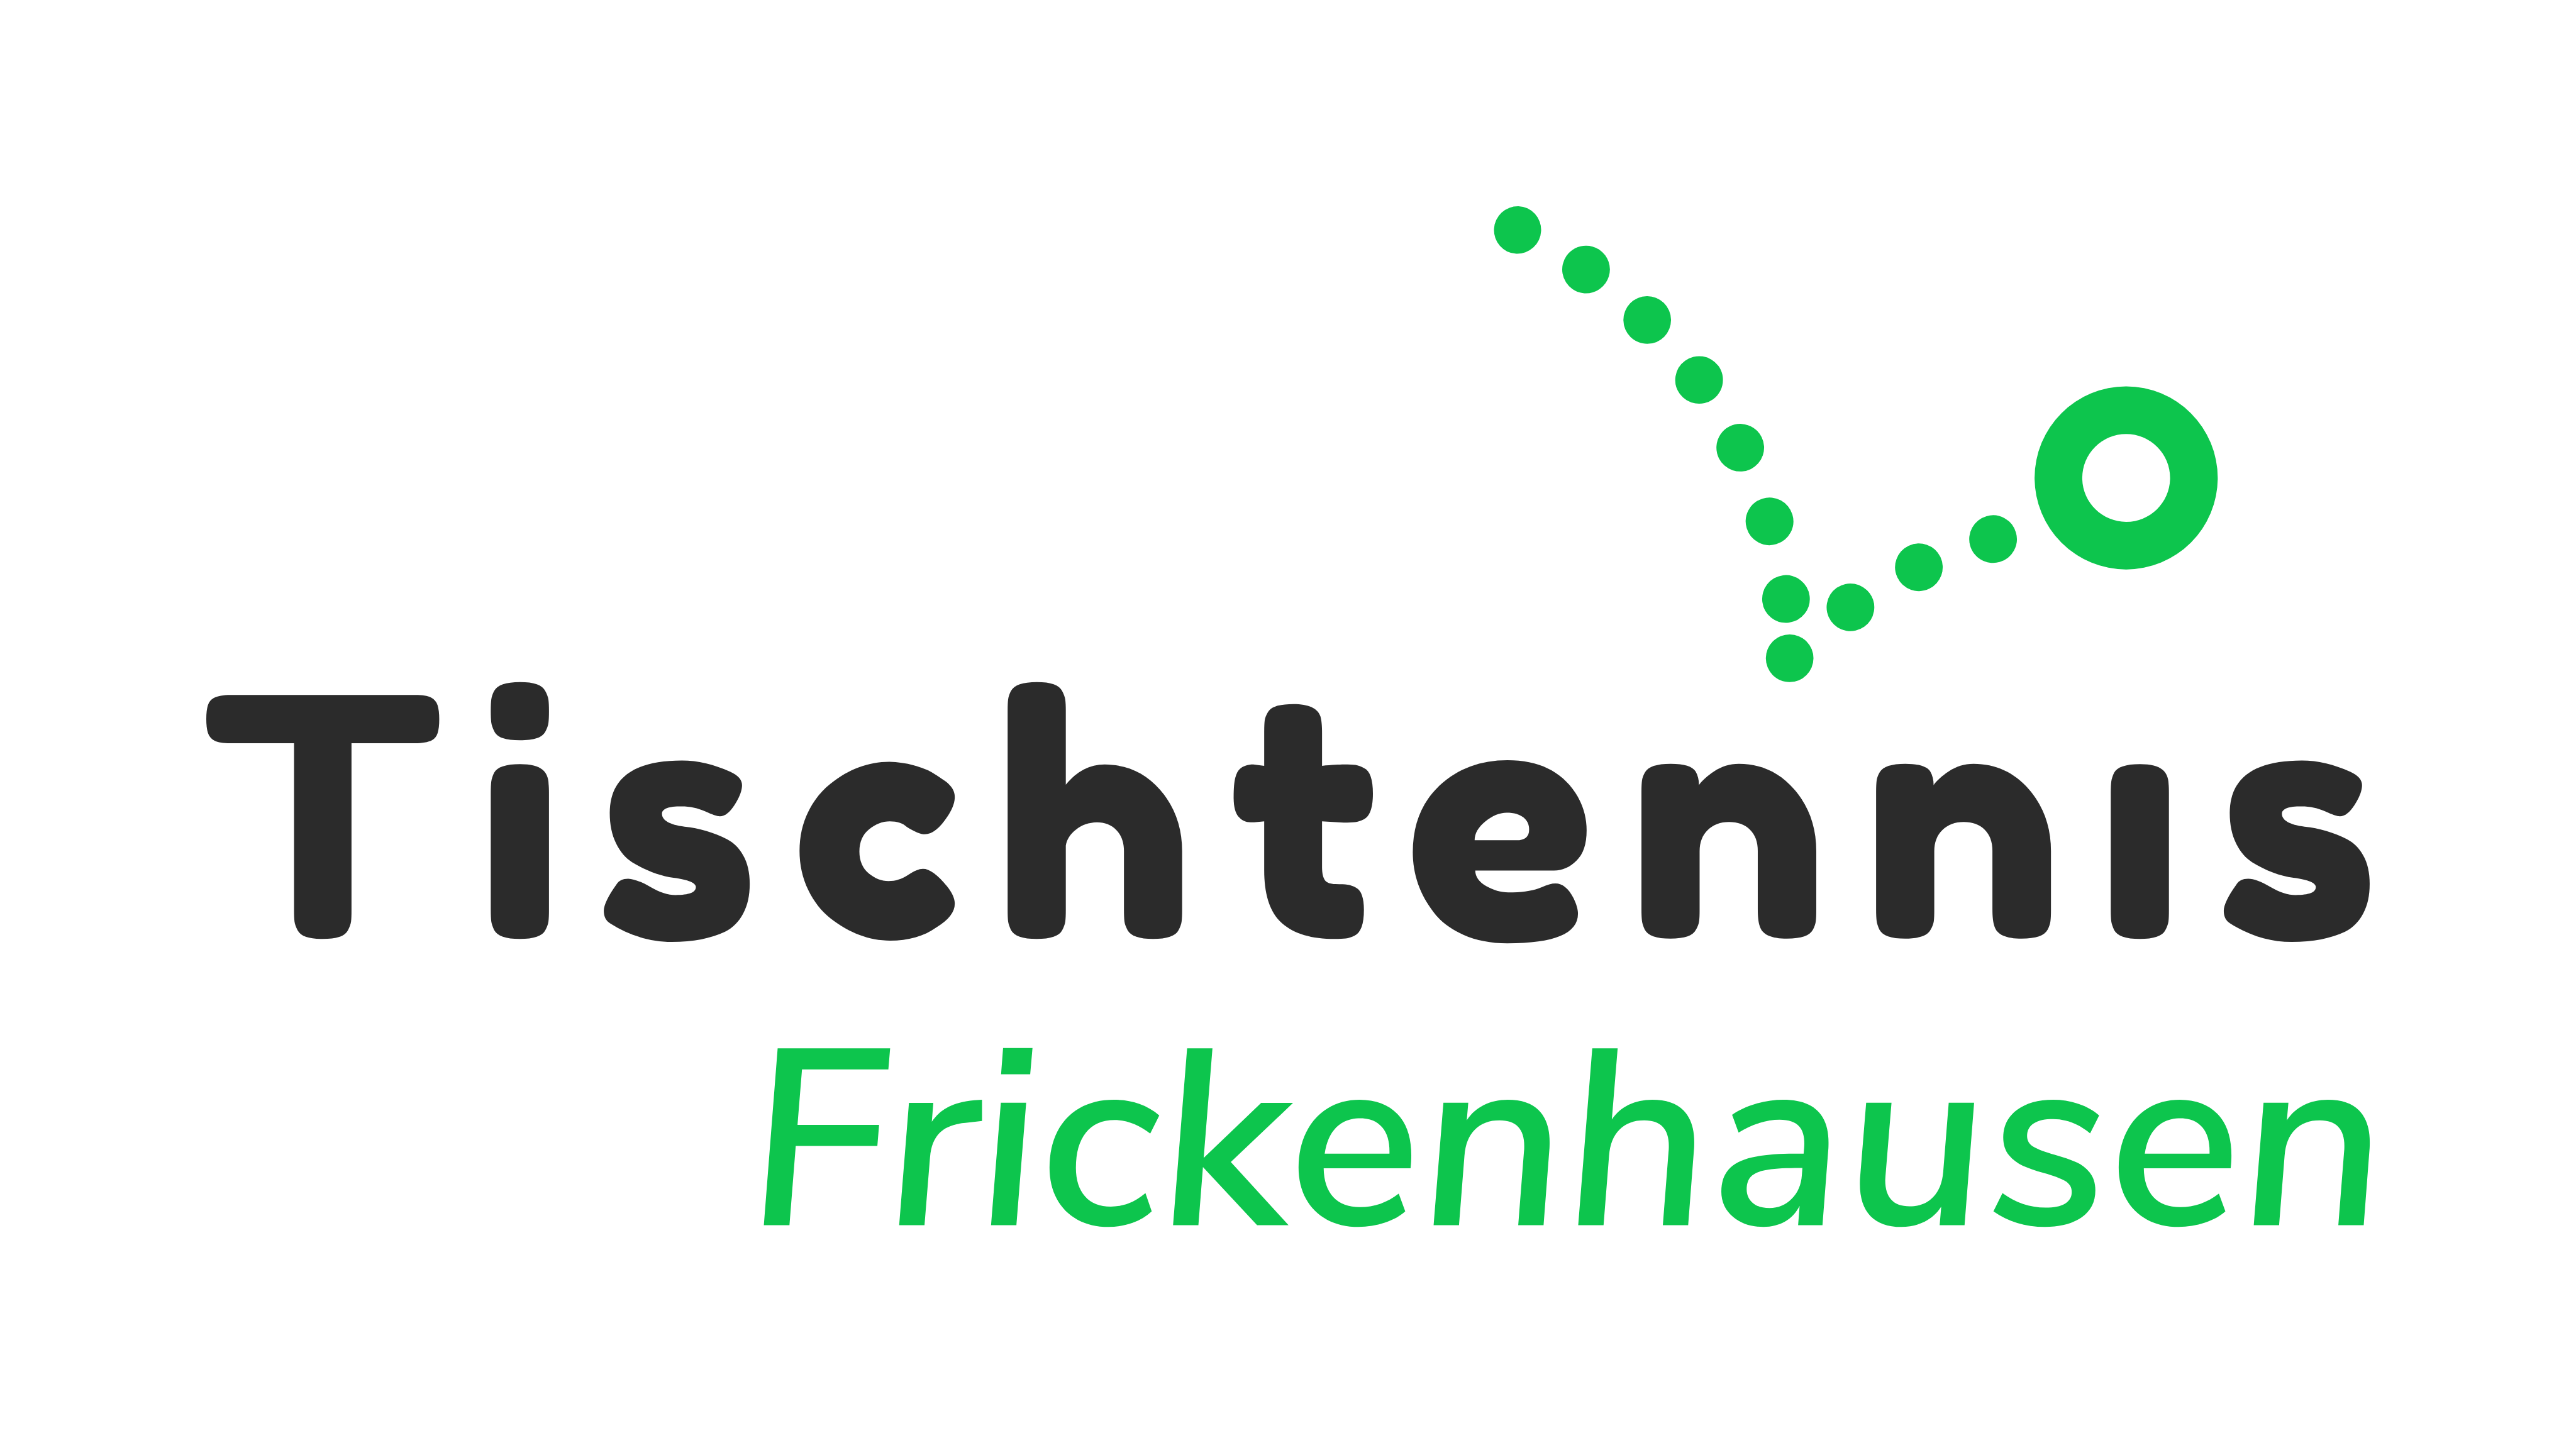 Einladung zur Hauptversammlung Tischtennis Frickenhausen am 08.07.2022